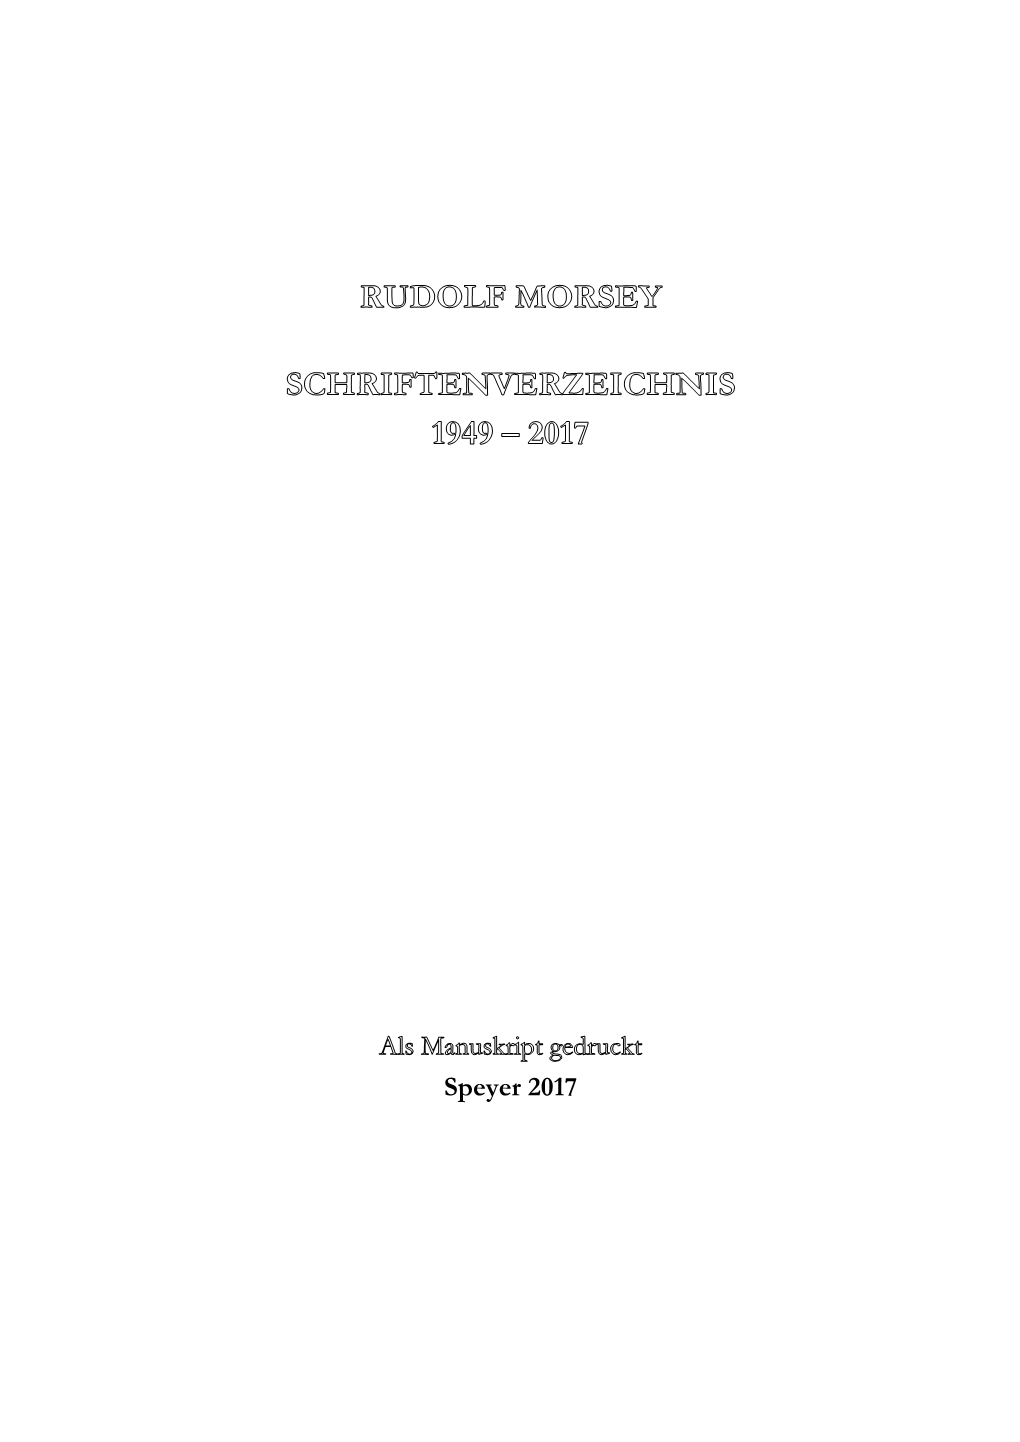 Schriftenverzeichnis Rudolf Morsey 1949-2017